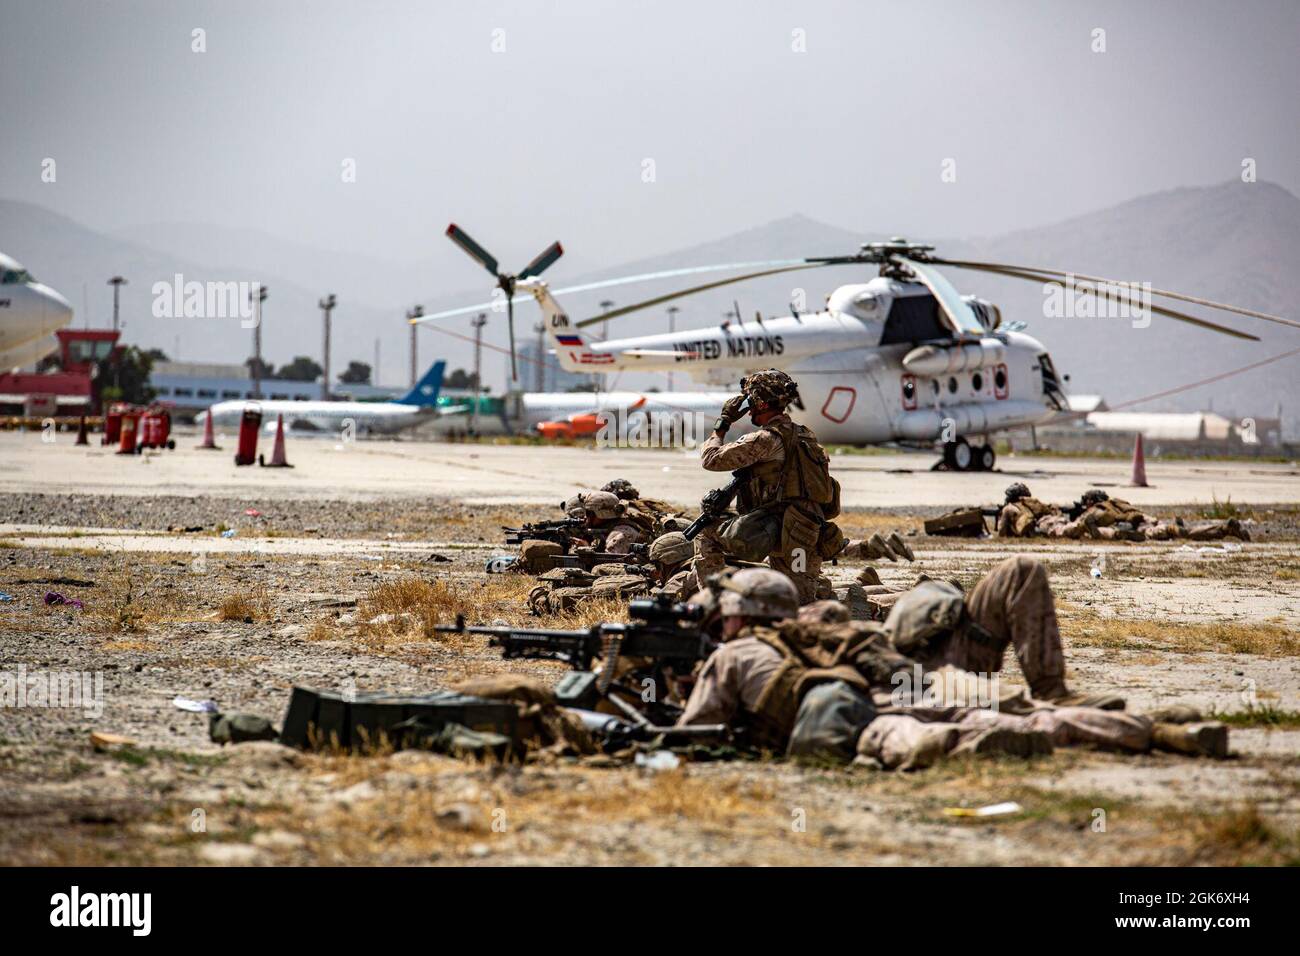 Marines assegnato al Marine Air Ground Task Force-Crisis Response-Central Command fornire sicurezza all'aeroporto internazionale Hamid Karzai, agosto 18. I membri del servizio degli Stati Uniti stanno assistendo il Dipartimento di Stato con un prelievo ordinato di personale designato in Afghanistan. Foto Stock